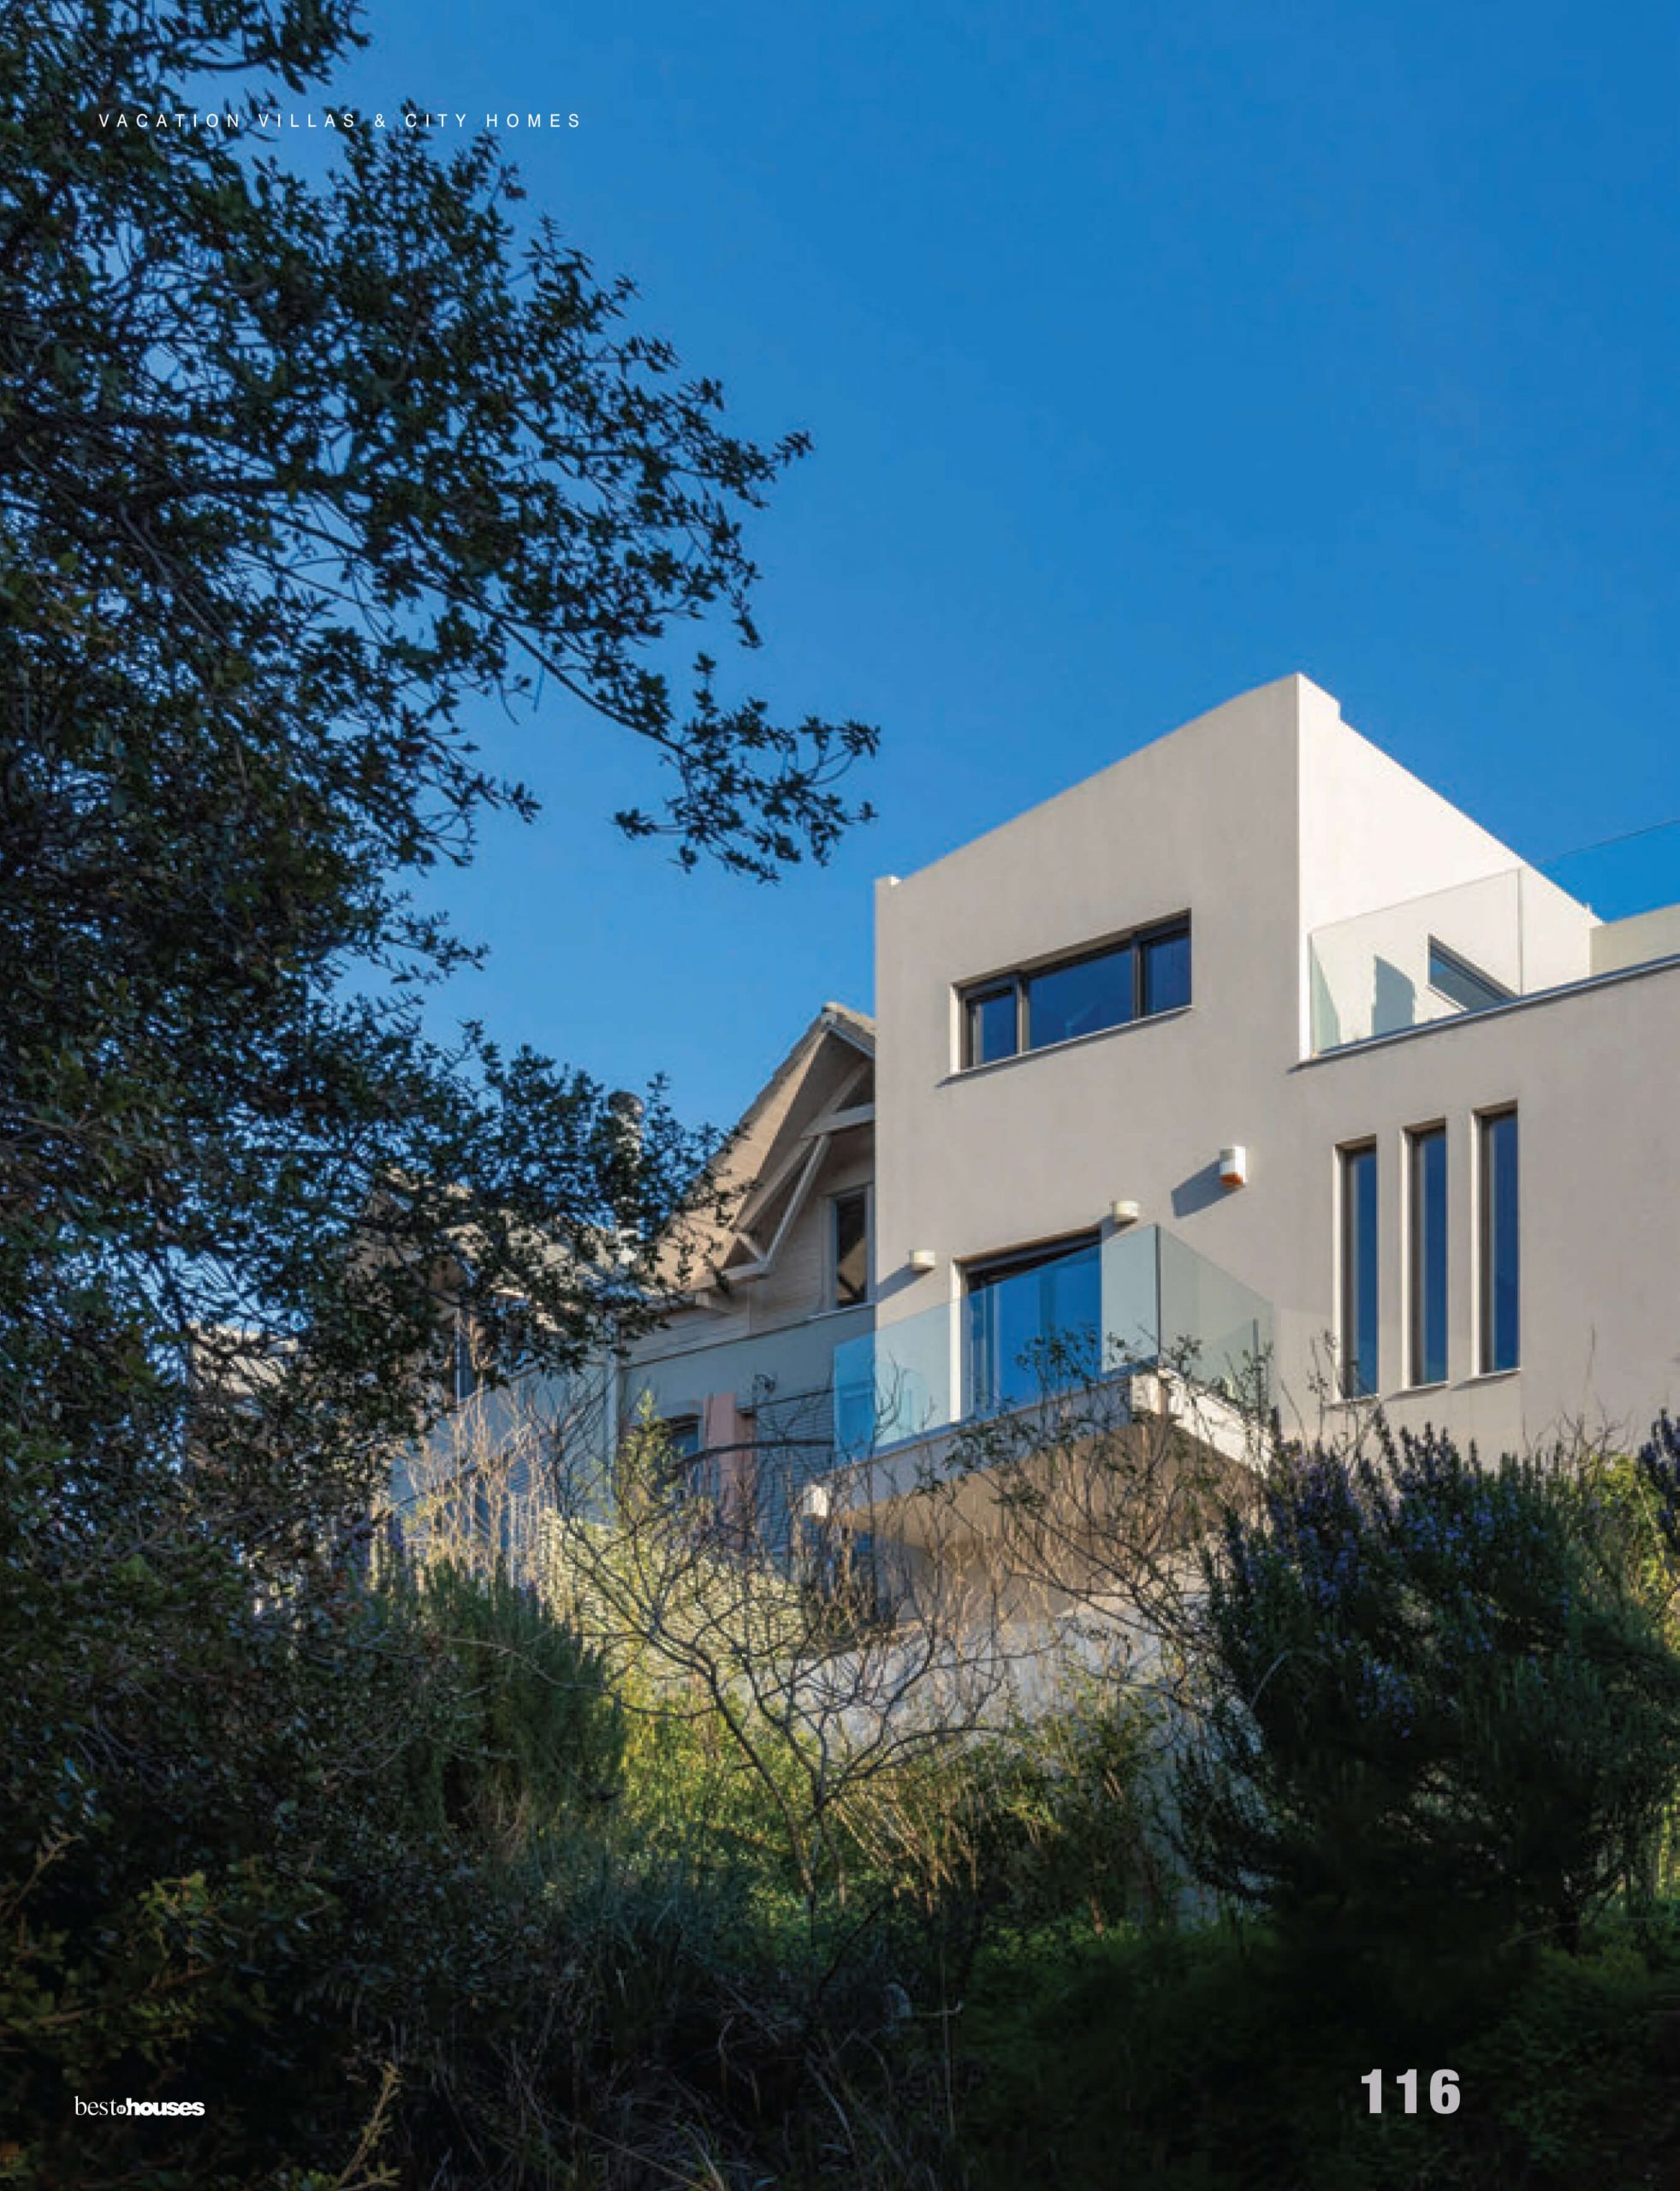 Choros Sifakis Architects